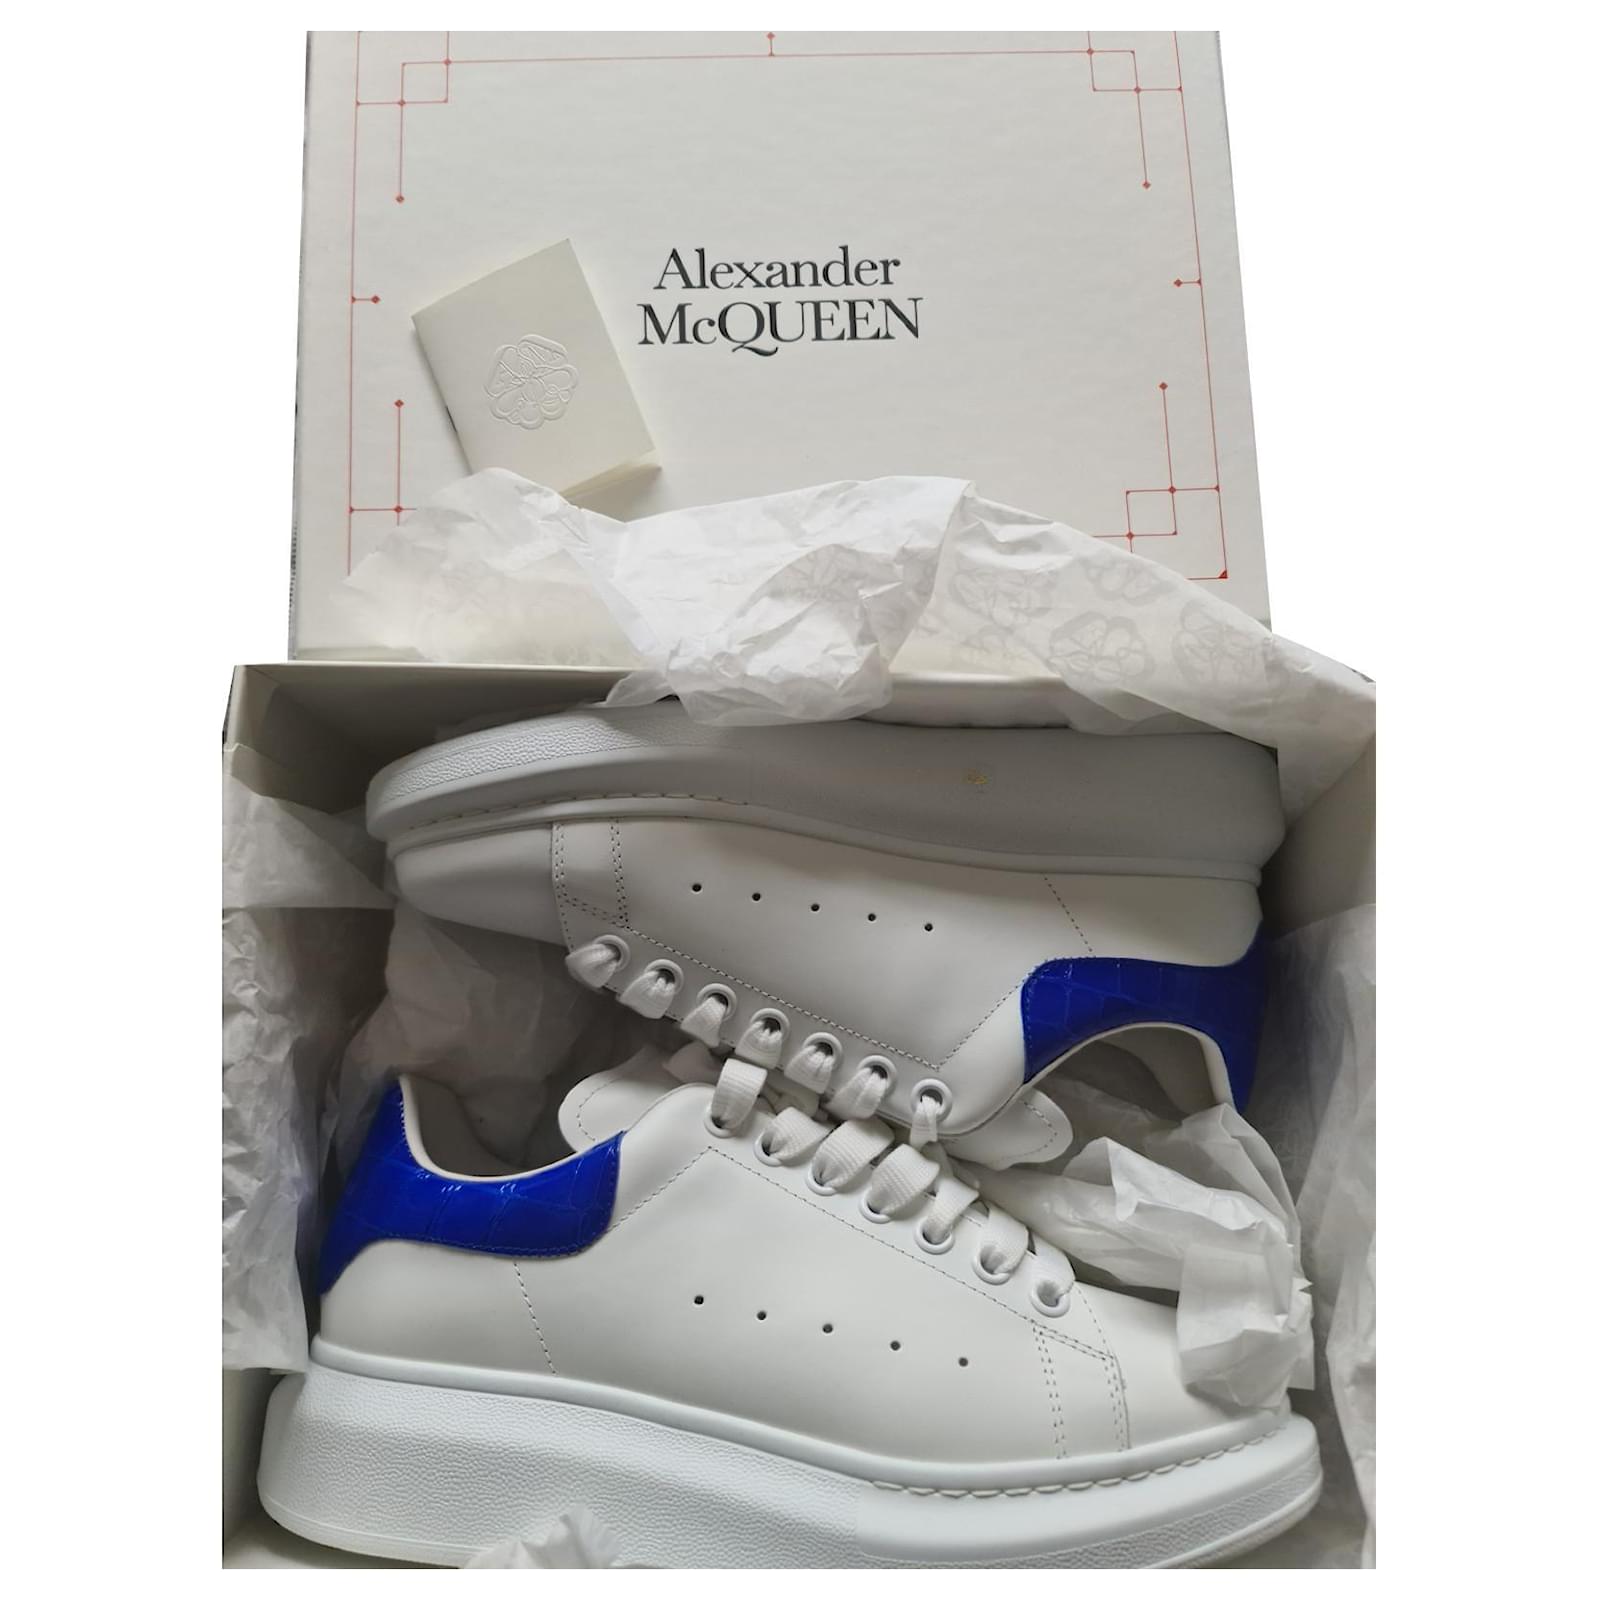 ALEXANDER MCQUEEN sneakers - Never worn - in size 41